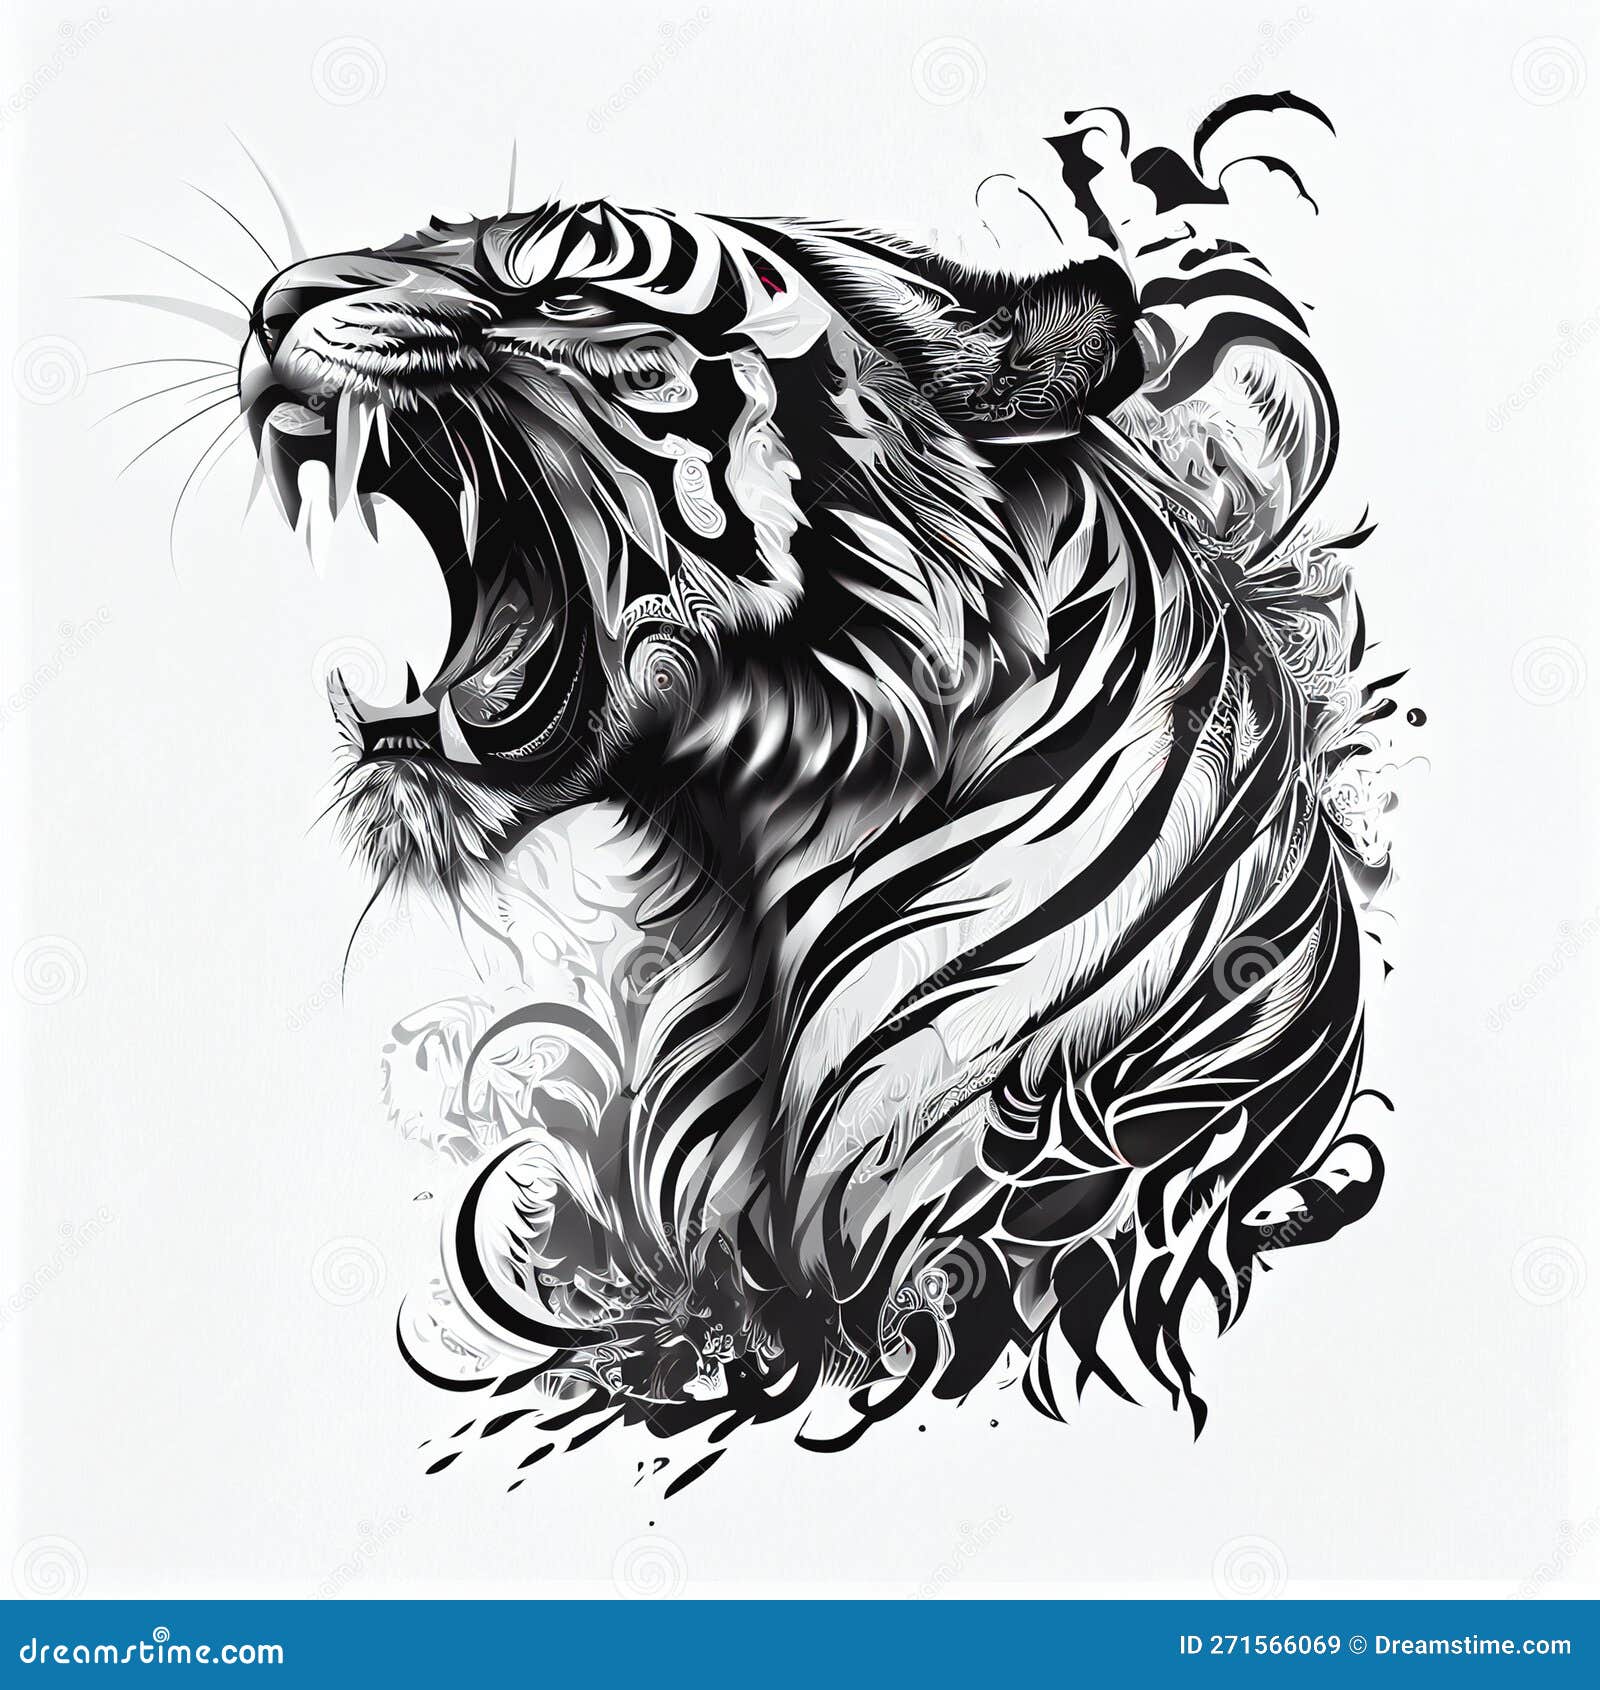 Tiger Tattoo On The Ribs - Tattoo Stylist Guide | Tiger tattoo, Rib tattoos  for women, Red ink tattoos